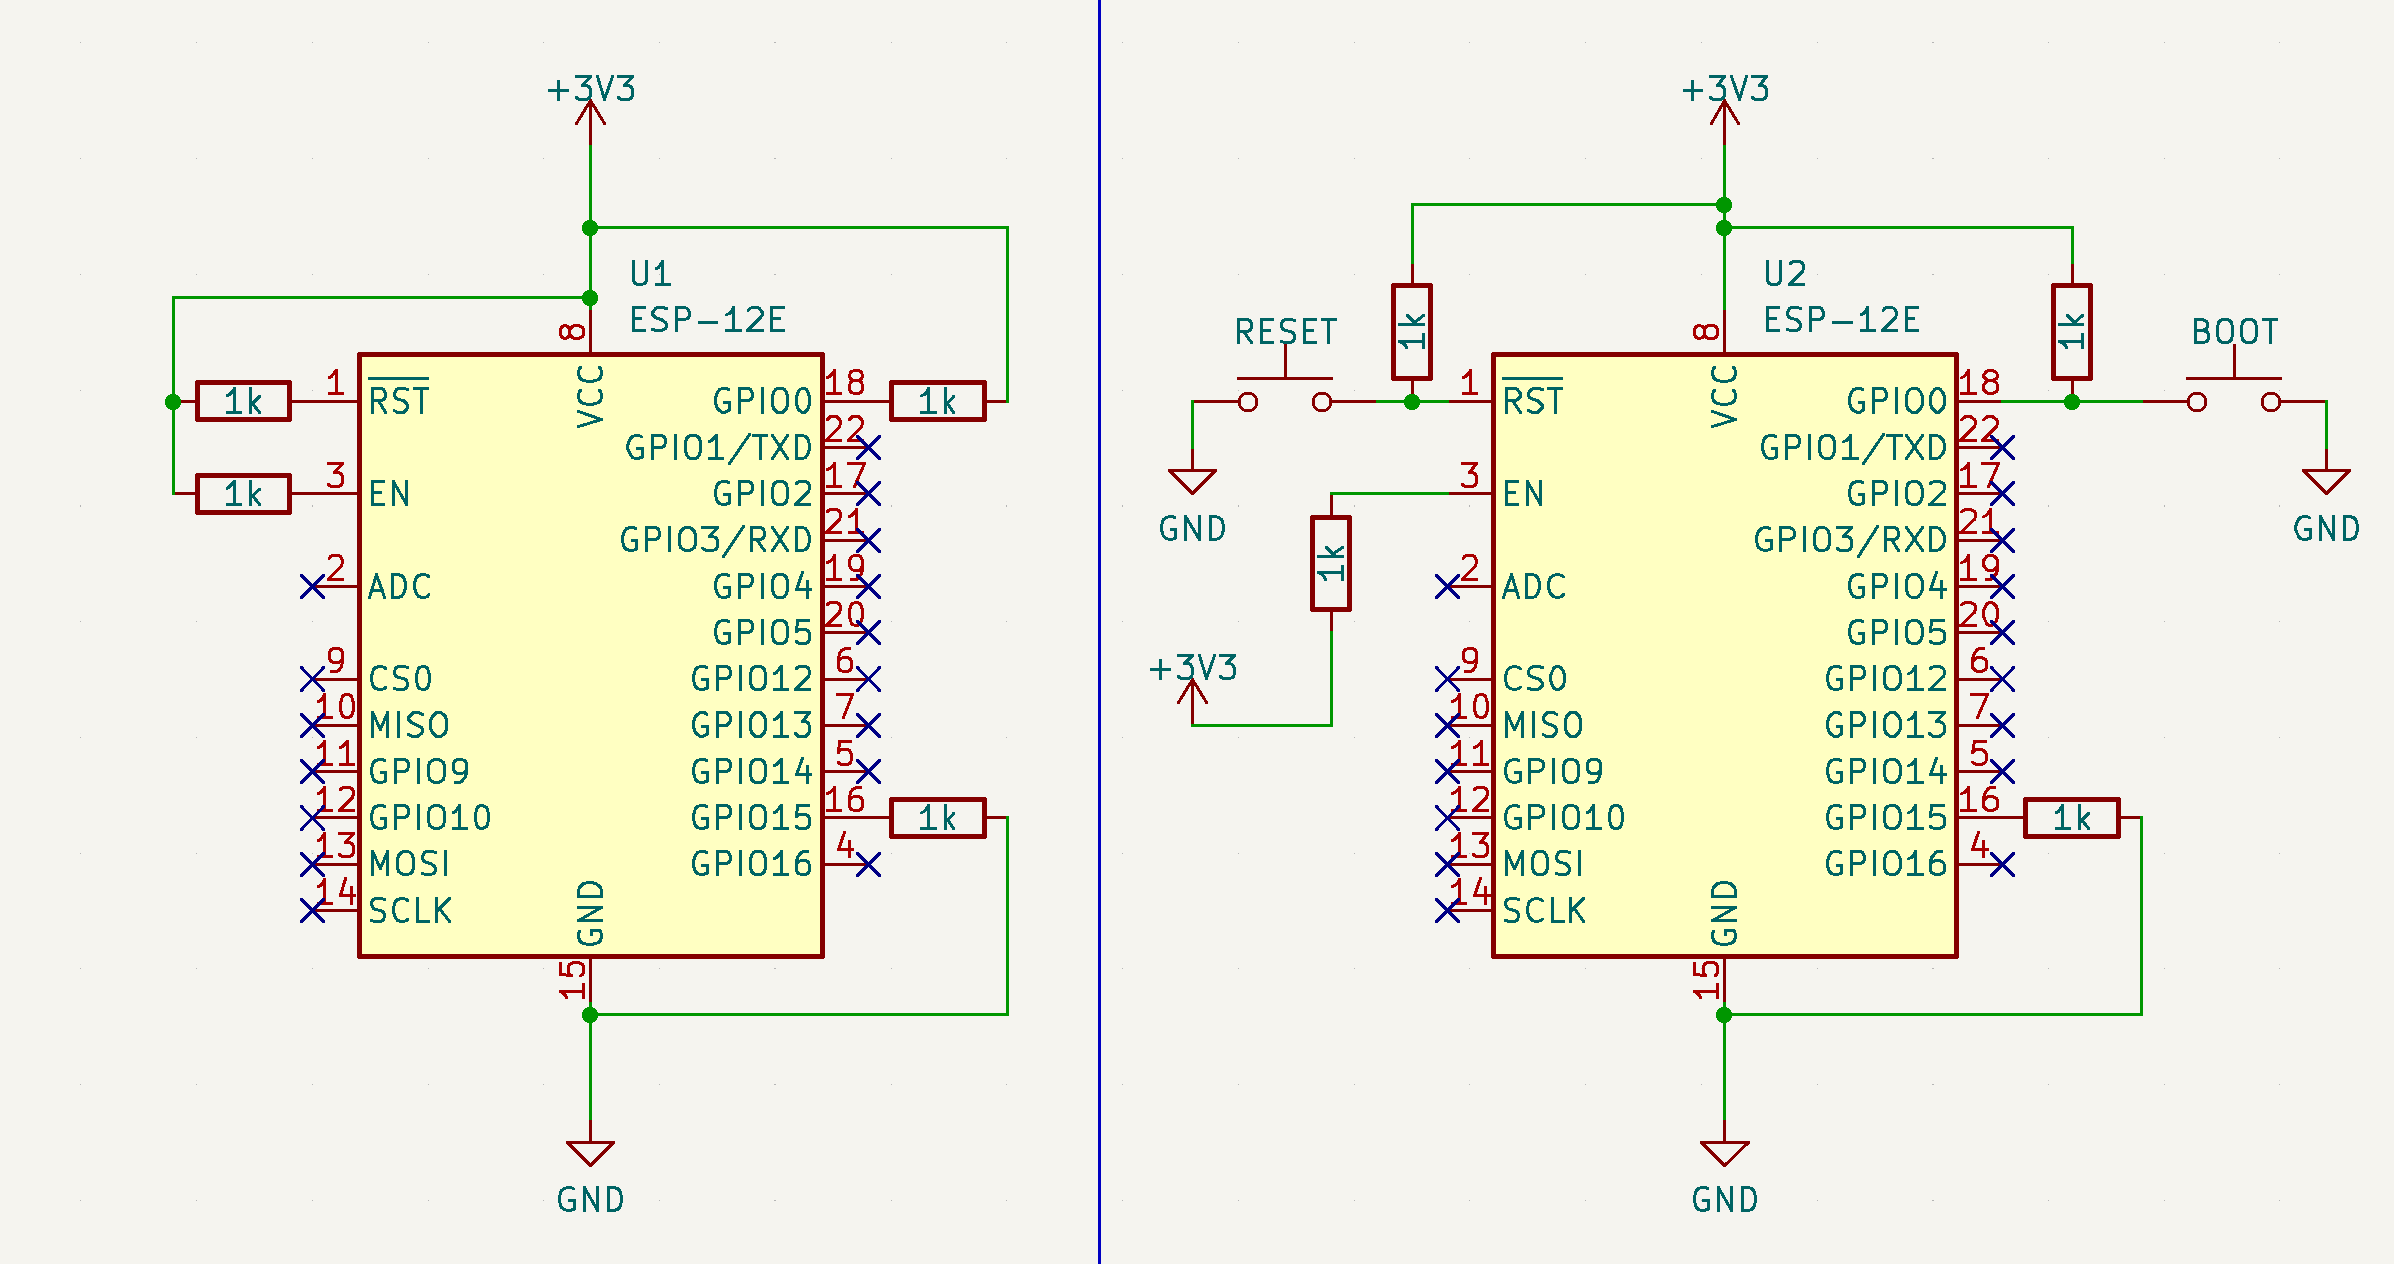 Circuits to boot the ESP-12E